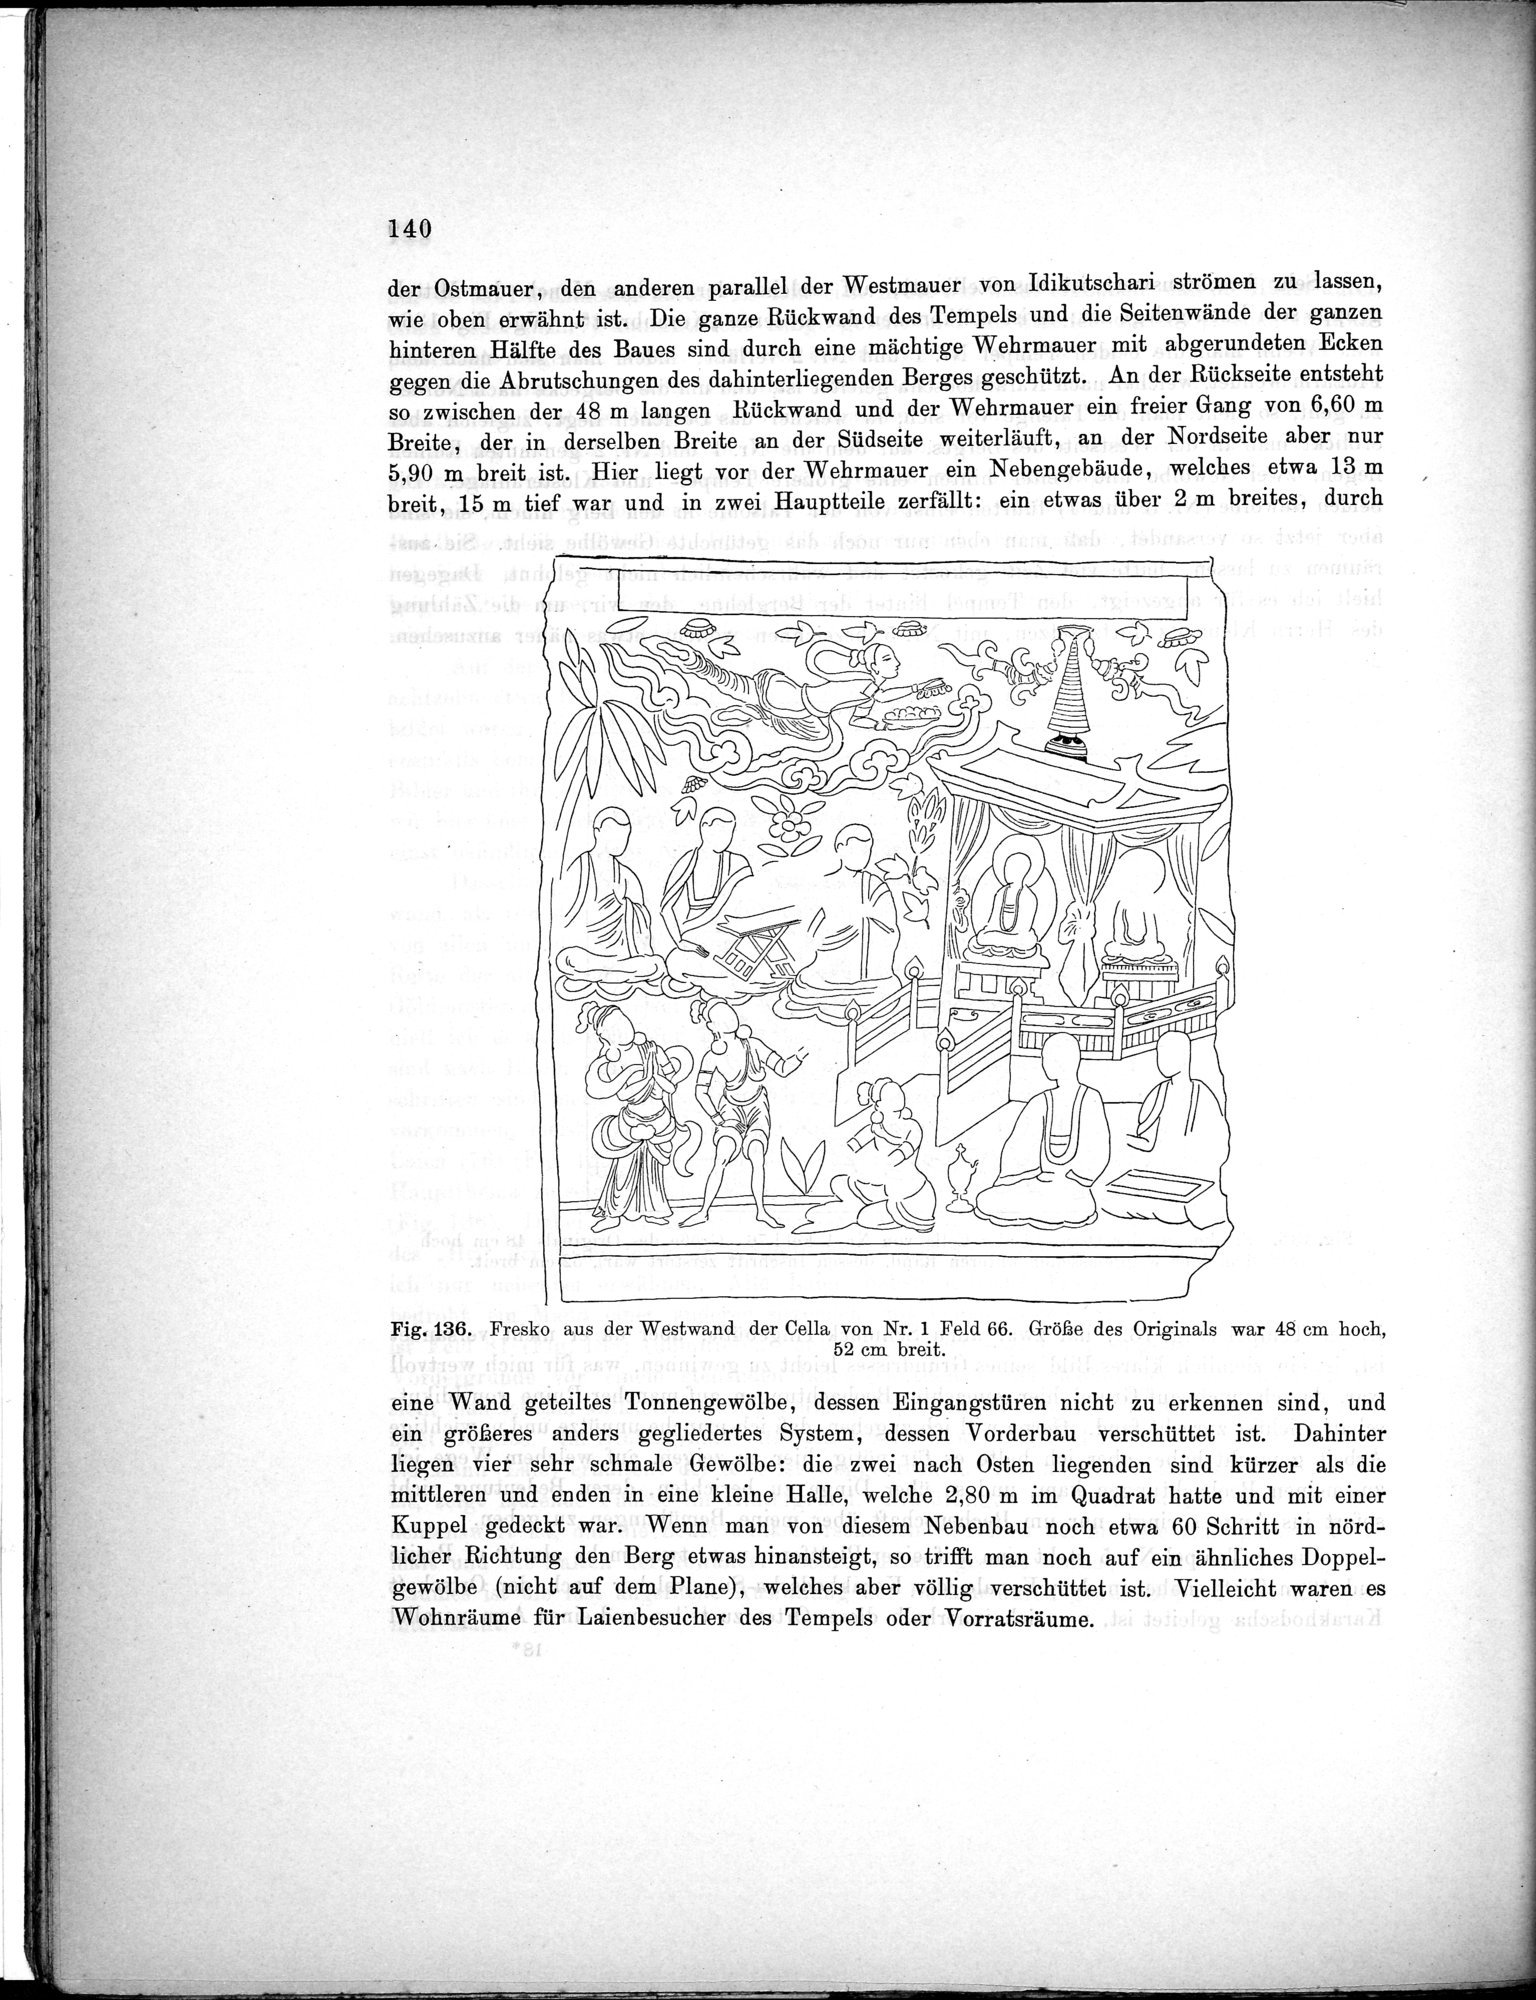 Bericht über archäologische Arbeiten in Idikutschari und Umgebung im Winter 1902-1903 : vol.1 / Page 150 (Grayscale High Resolution Image)